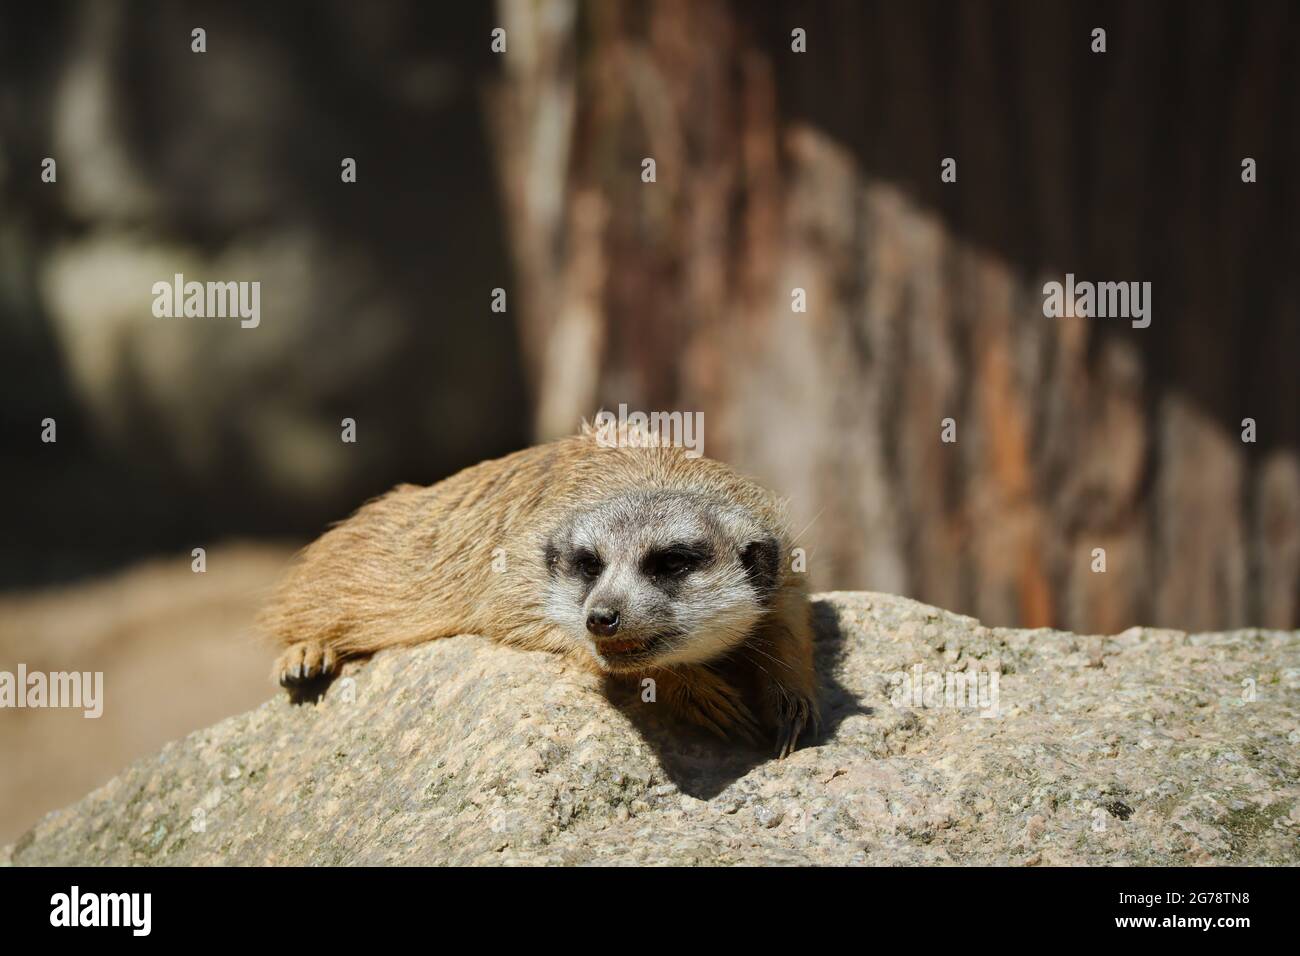 Carino Brown Meerkat si trova su Rock in Zoo. Suricate è una piccola Mongoose africana. Ritratto di animale nel giardino zoologico. Foto Stock